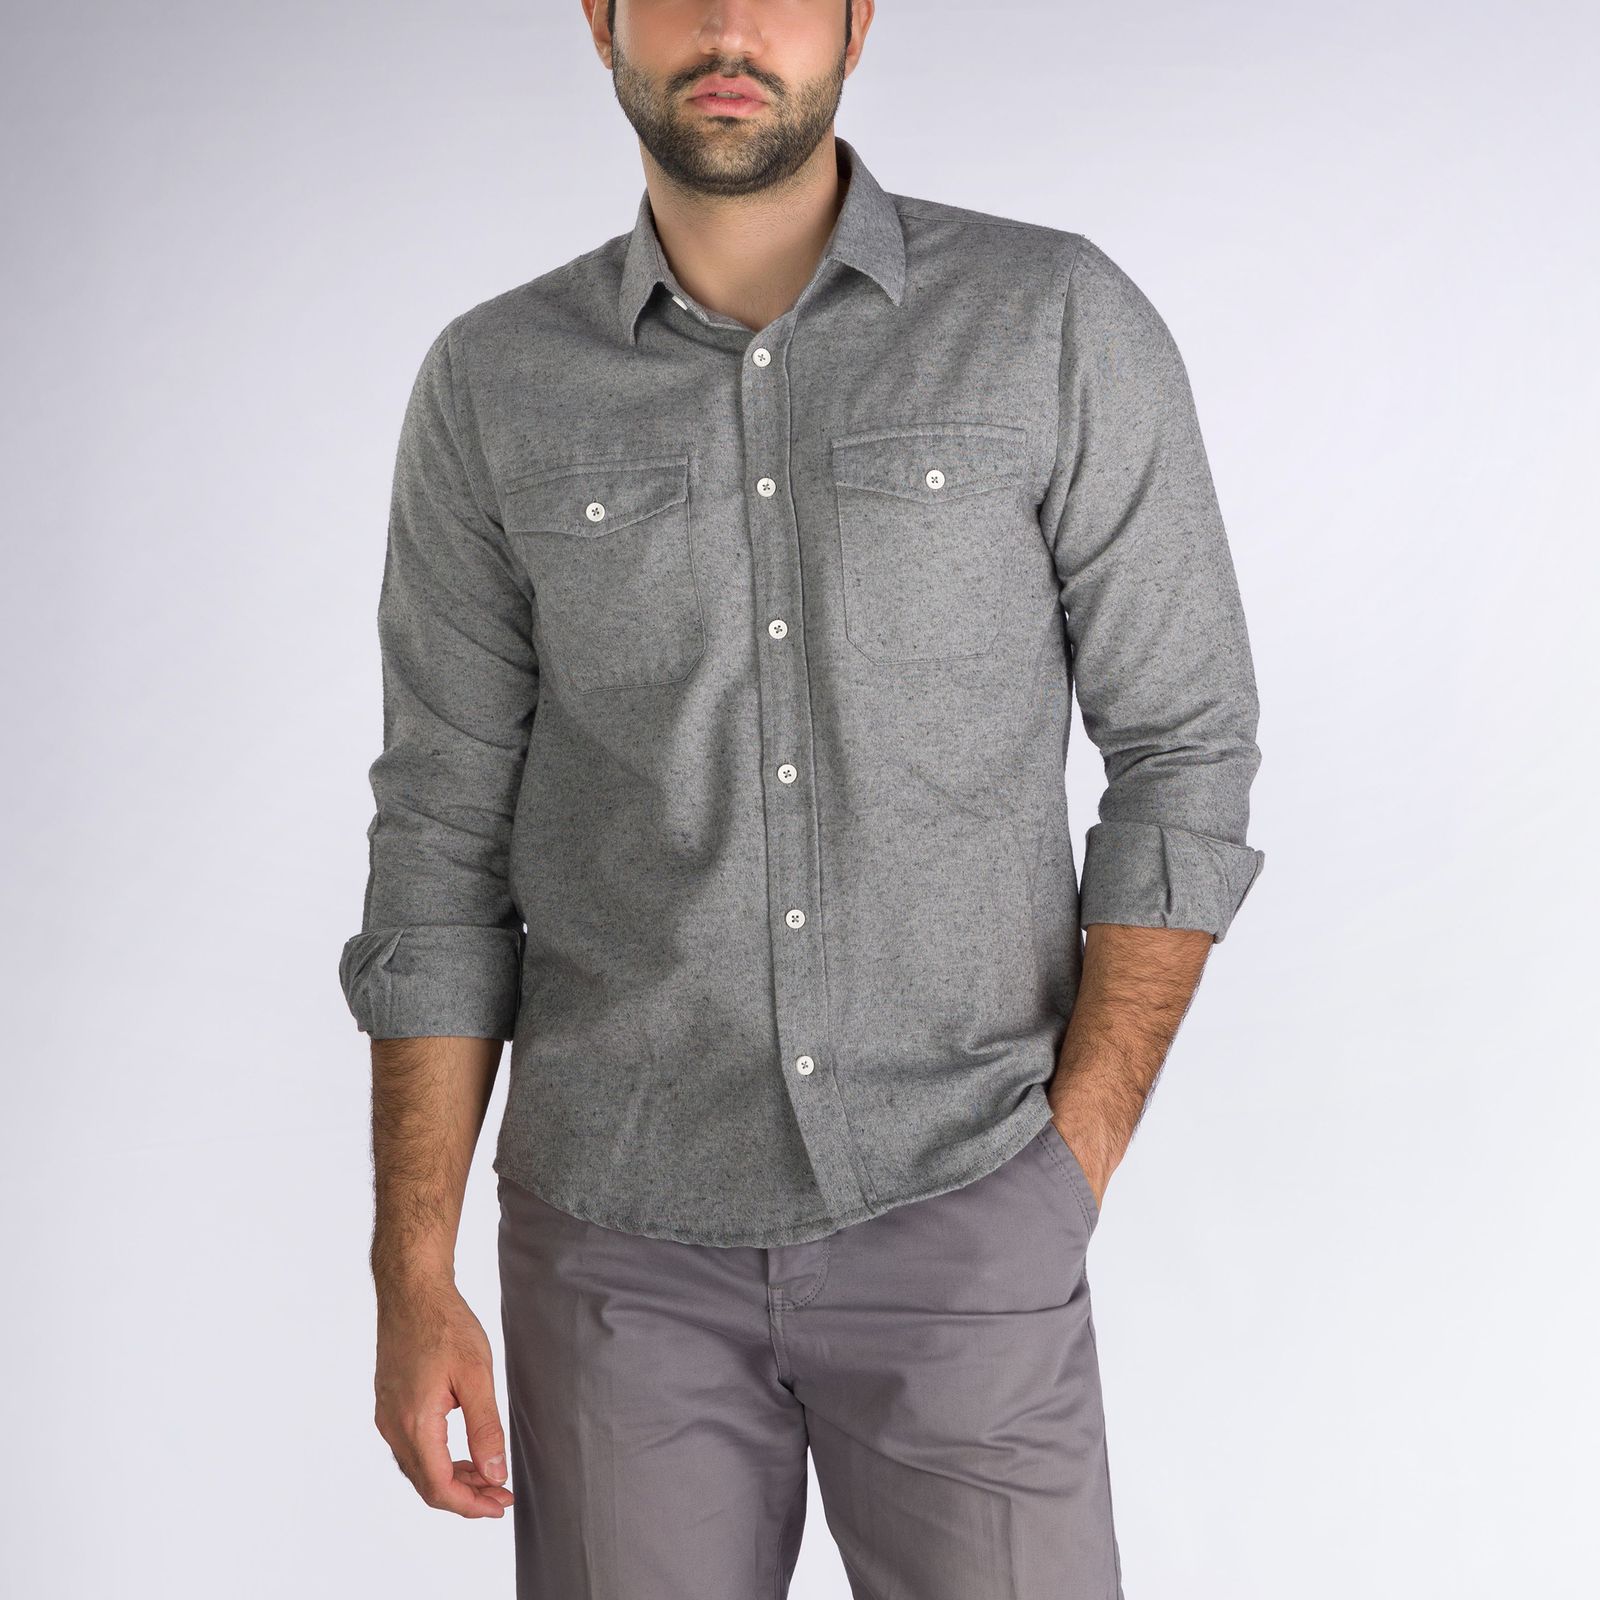 پیراهن آستین بلند مردانه پاتن جامه مدل پشمی 102721020210442 رنگ طوسی